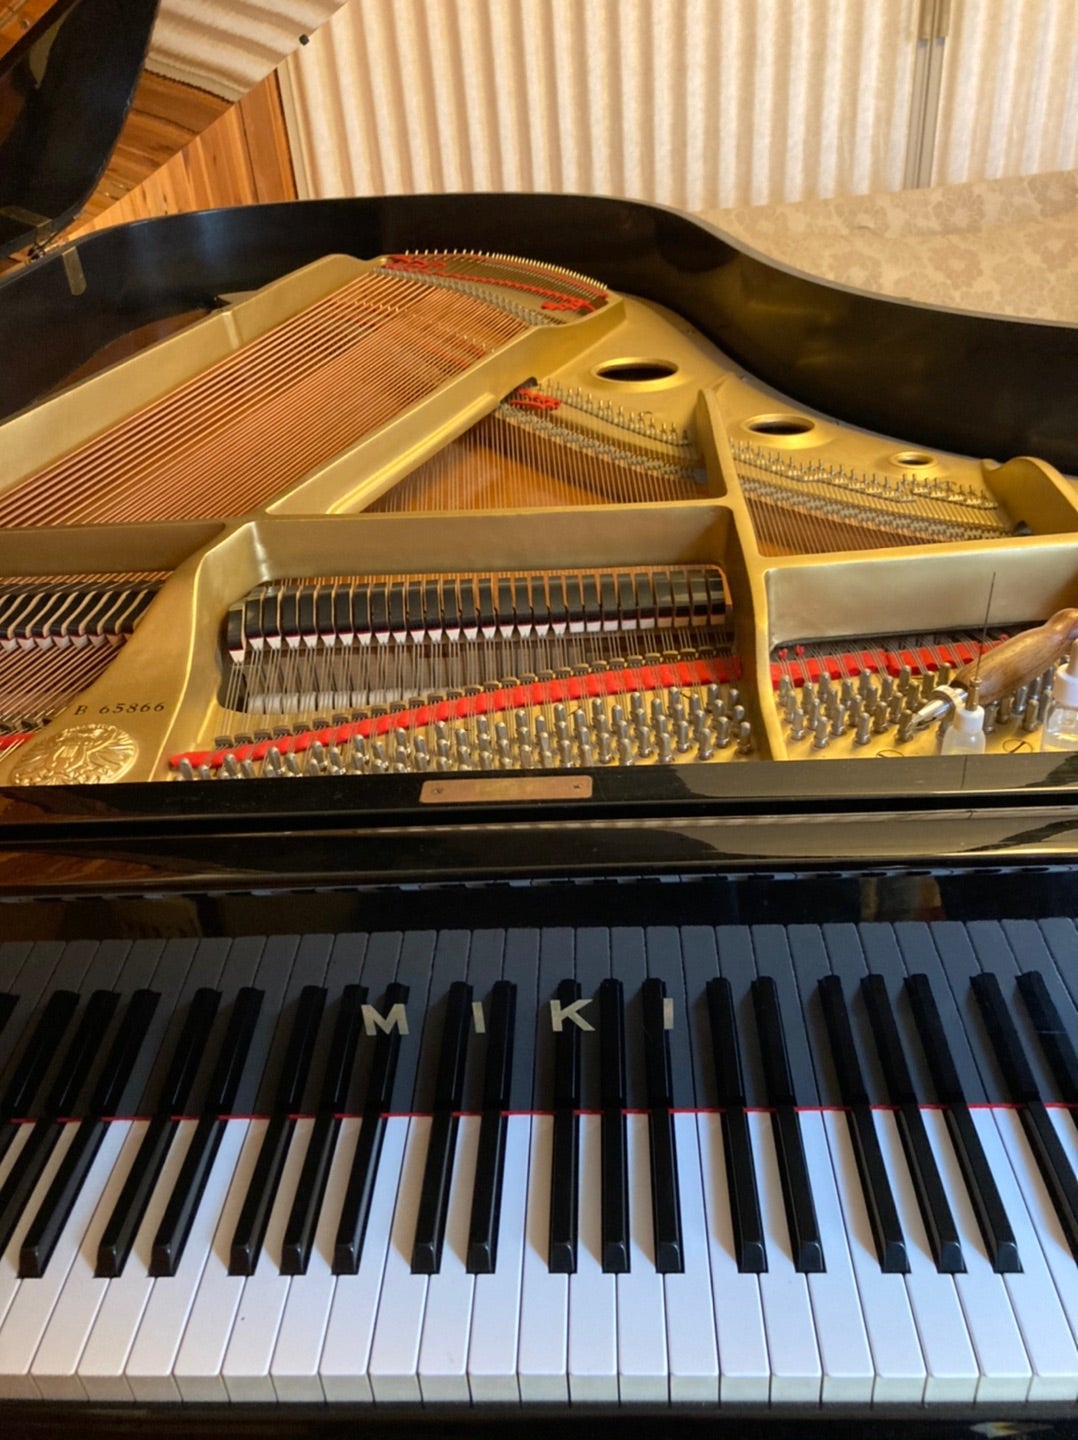 MIKIグランドピアノが2台 | Klavier craft のらりくらりブログ